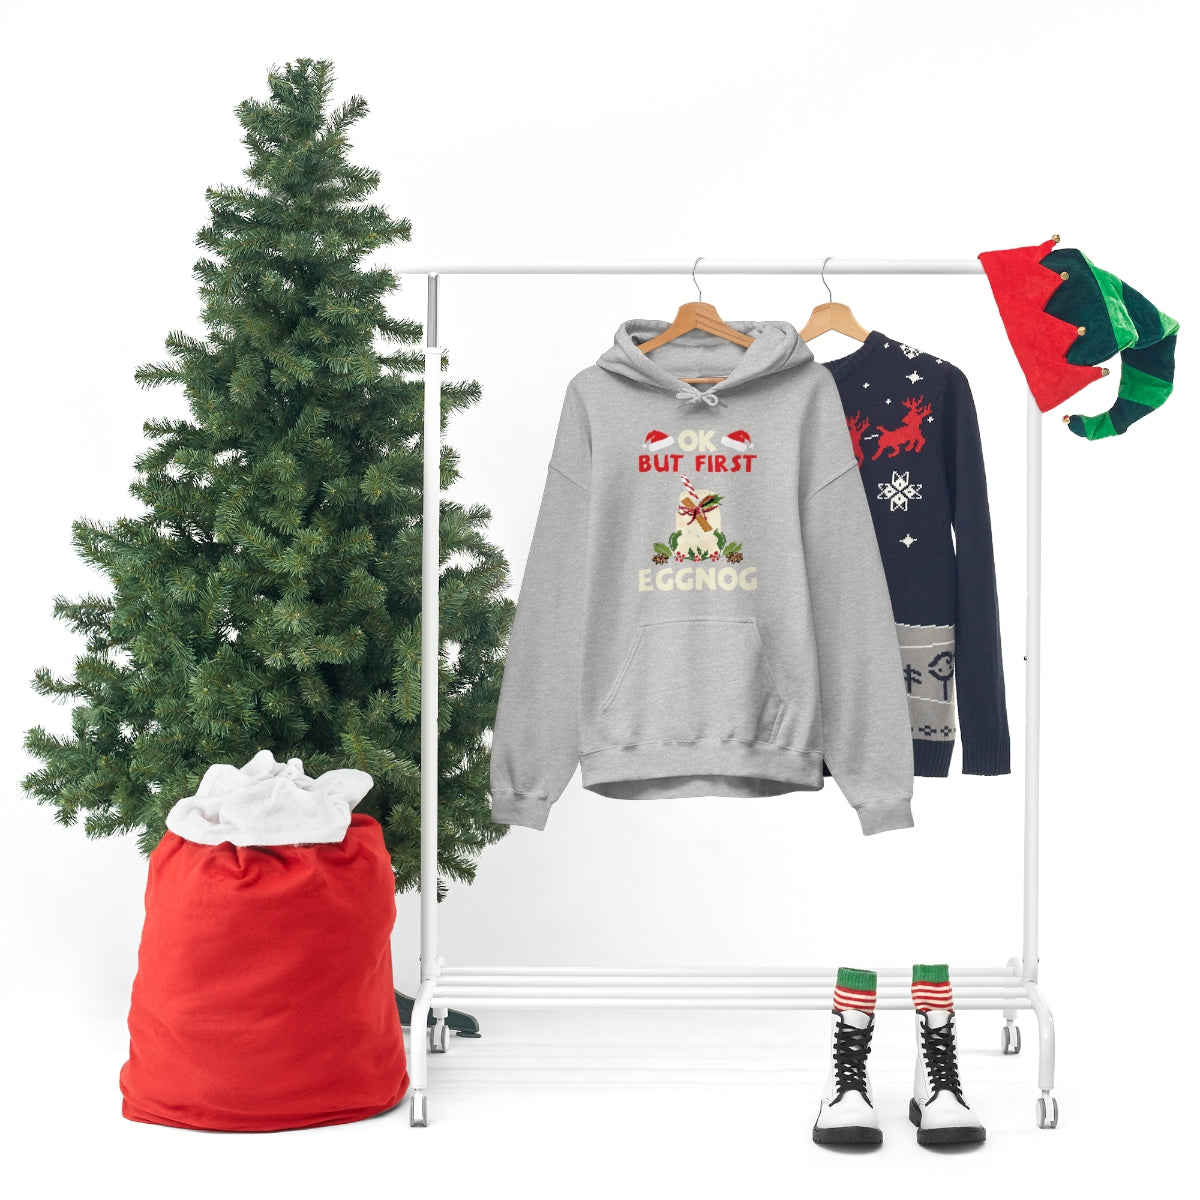 Merry Christmas Hoodie Unisex Custom Hoodie , Hooded Sweatshirt , OK BUT FIRST EGGNOG Printify